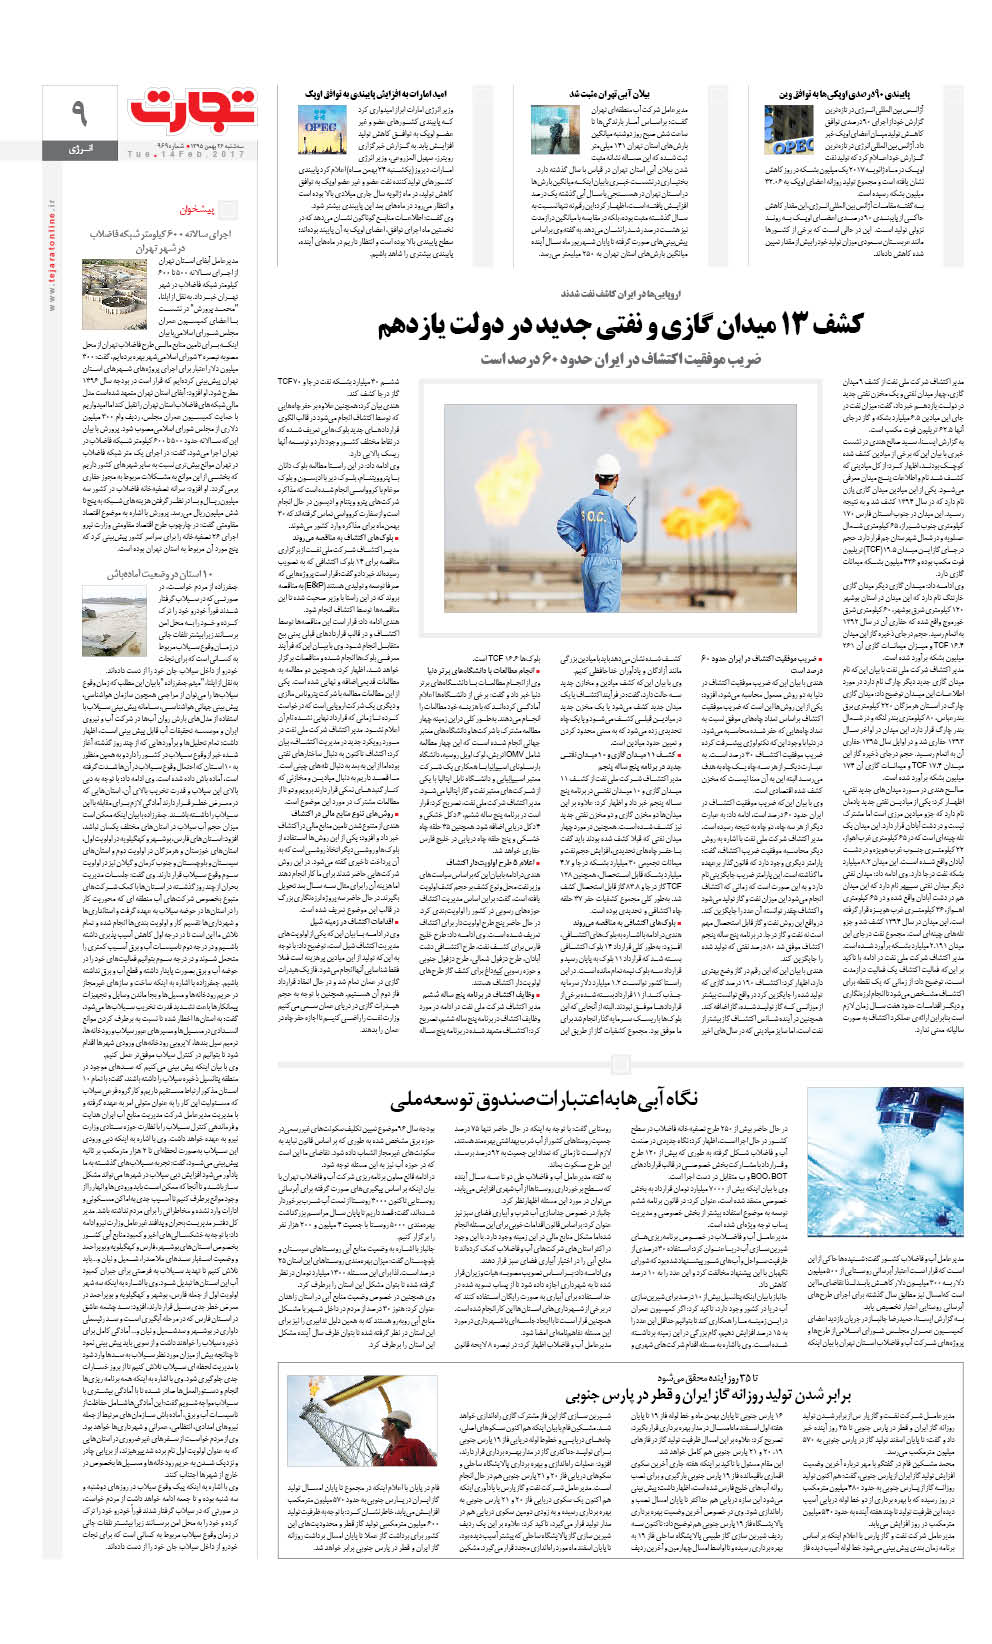 نعمت‌زاده درخواست بازنشستگی خود را پس گرفت /دولت تصمیمی برای تغییر قانون ندارد/ملاقات فولادساران در تهران